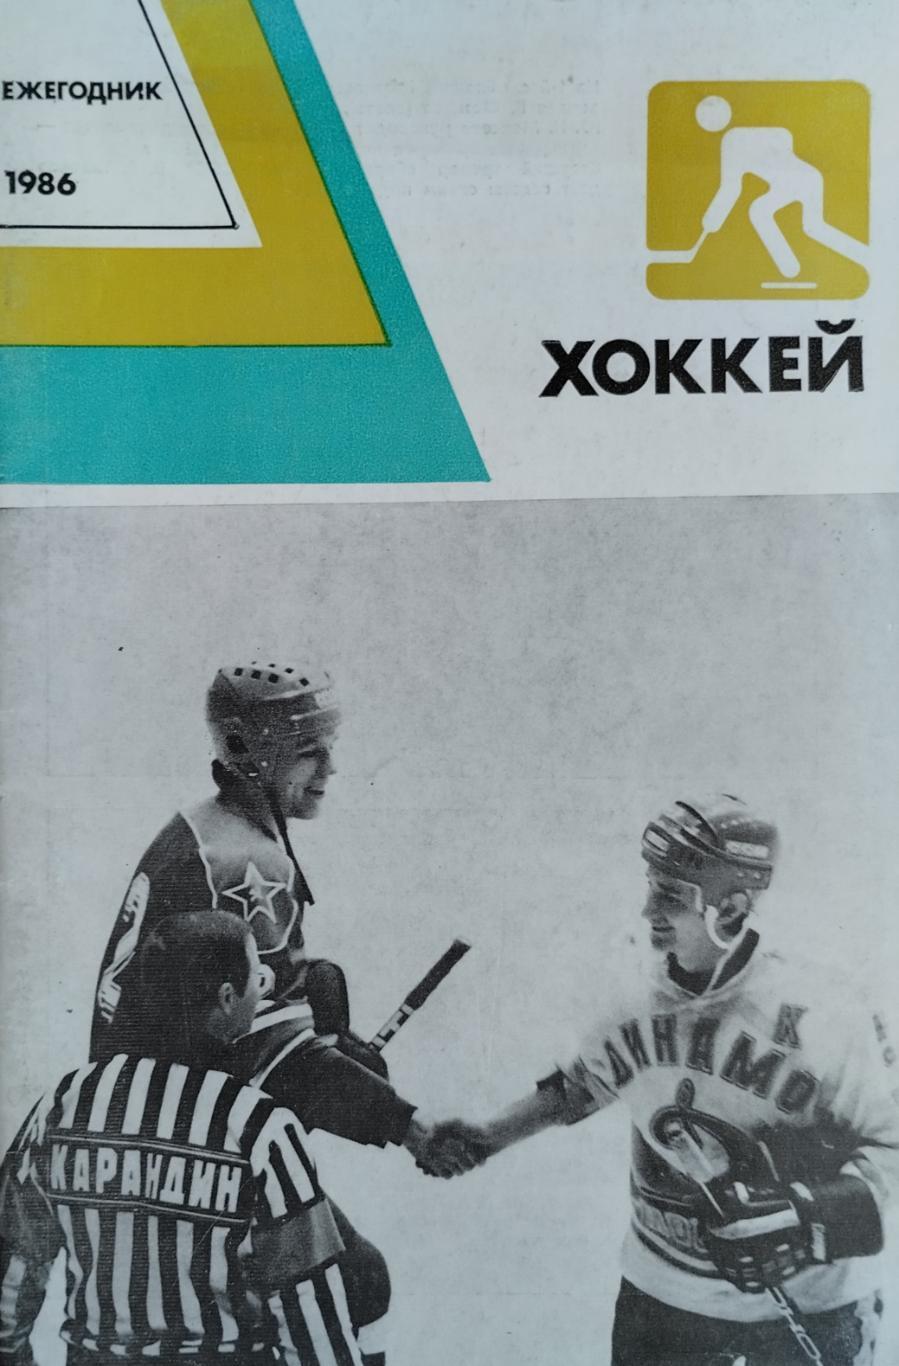 Ежегодник. Хоккей. 1986. 80 стр.